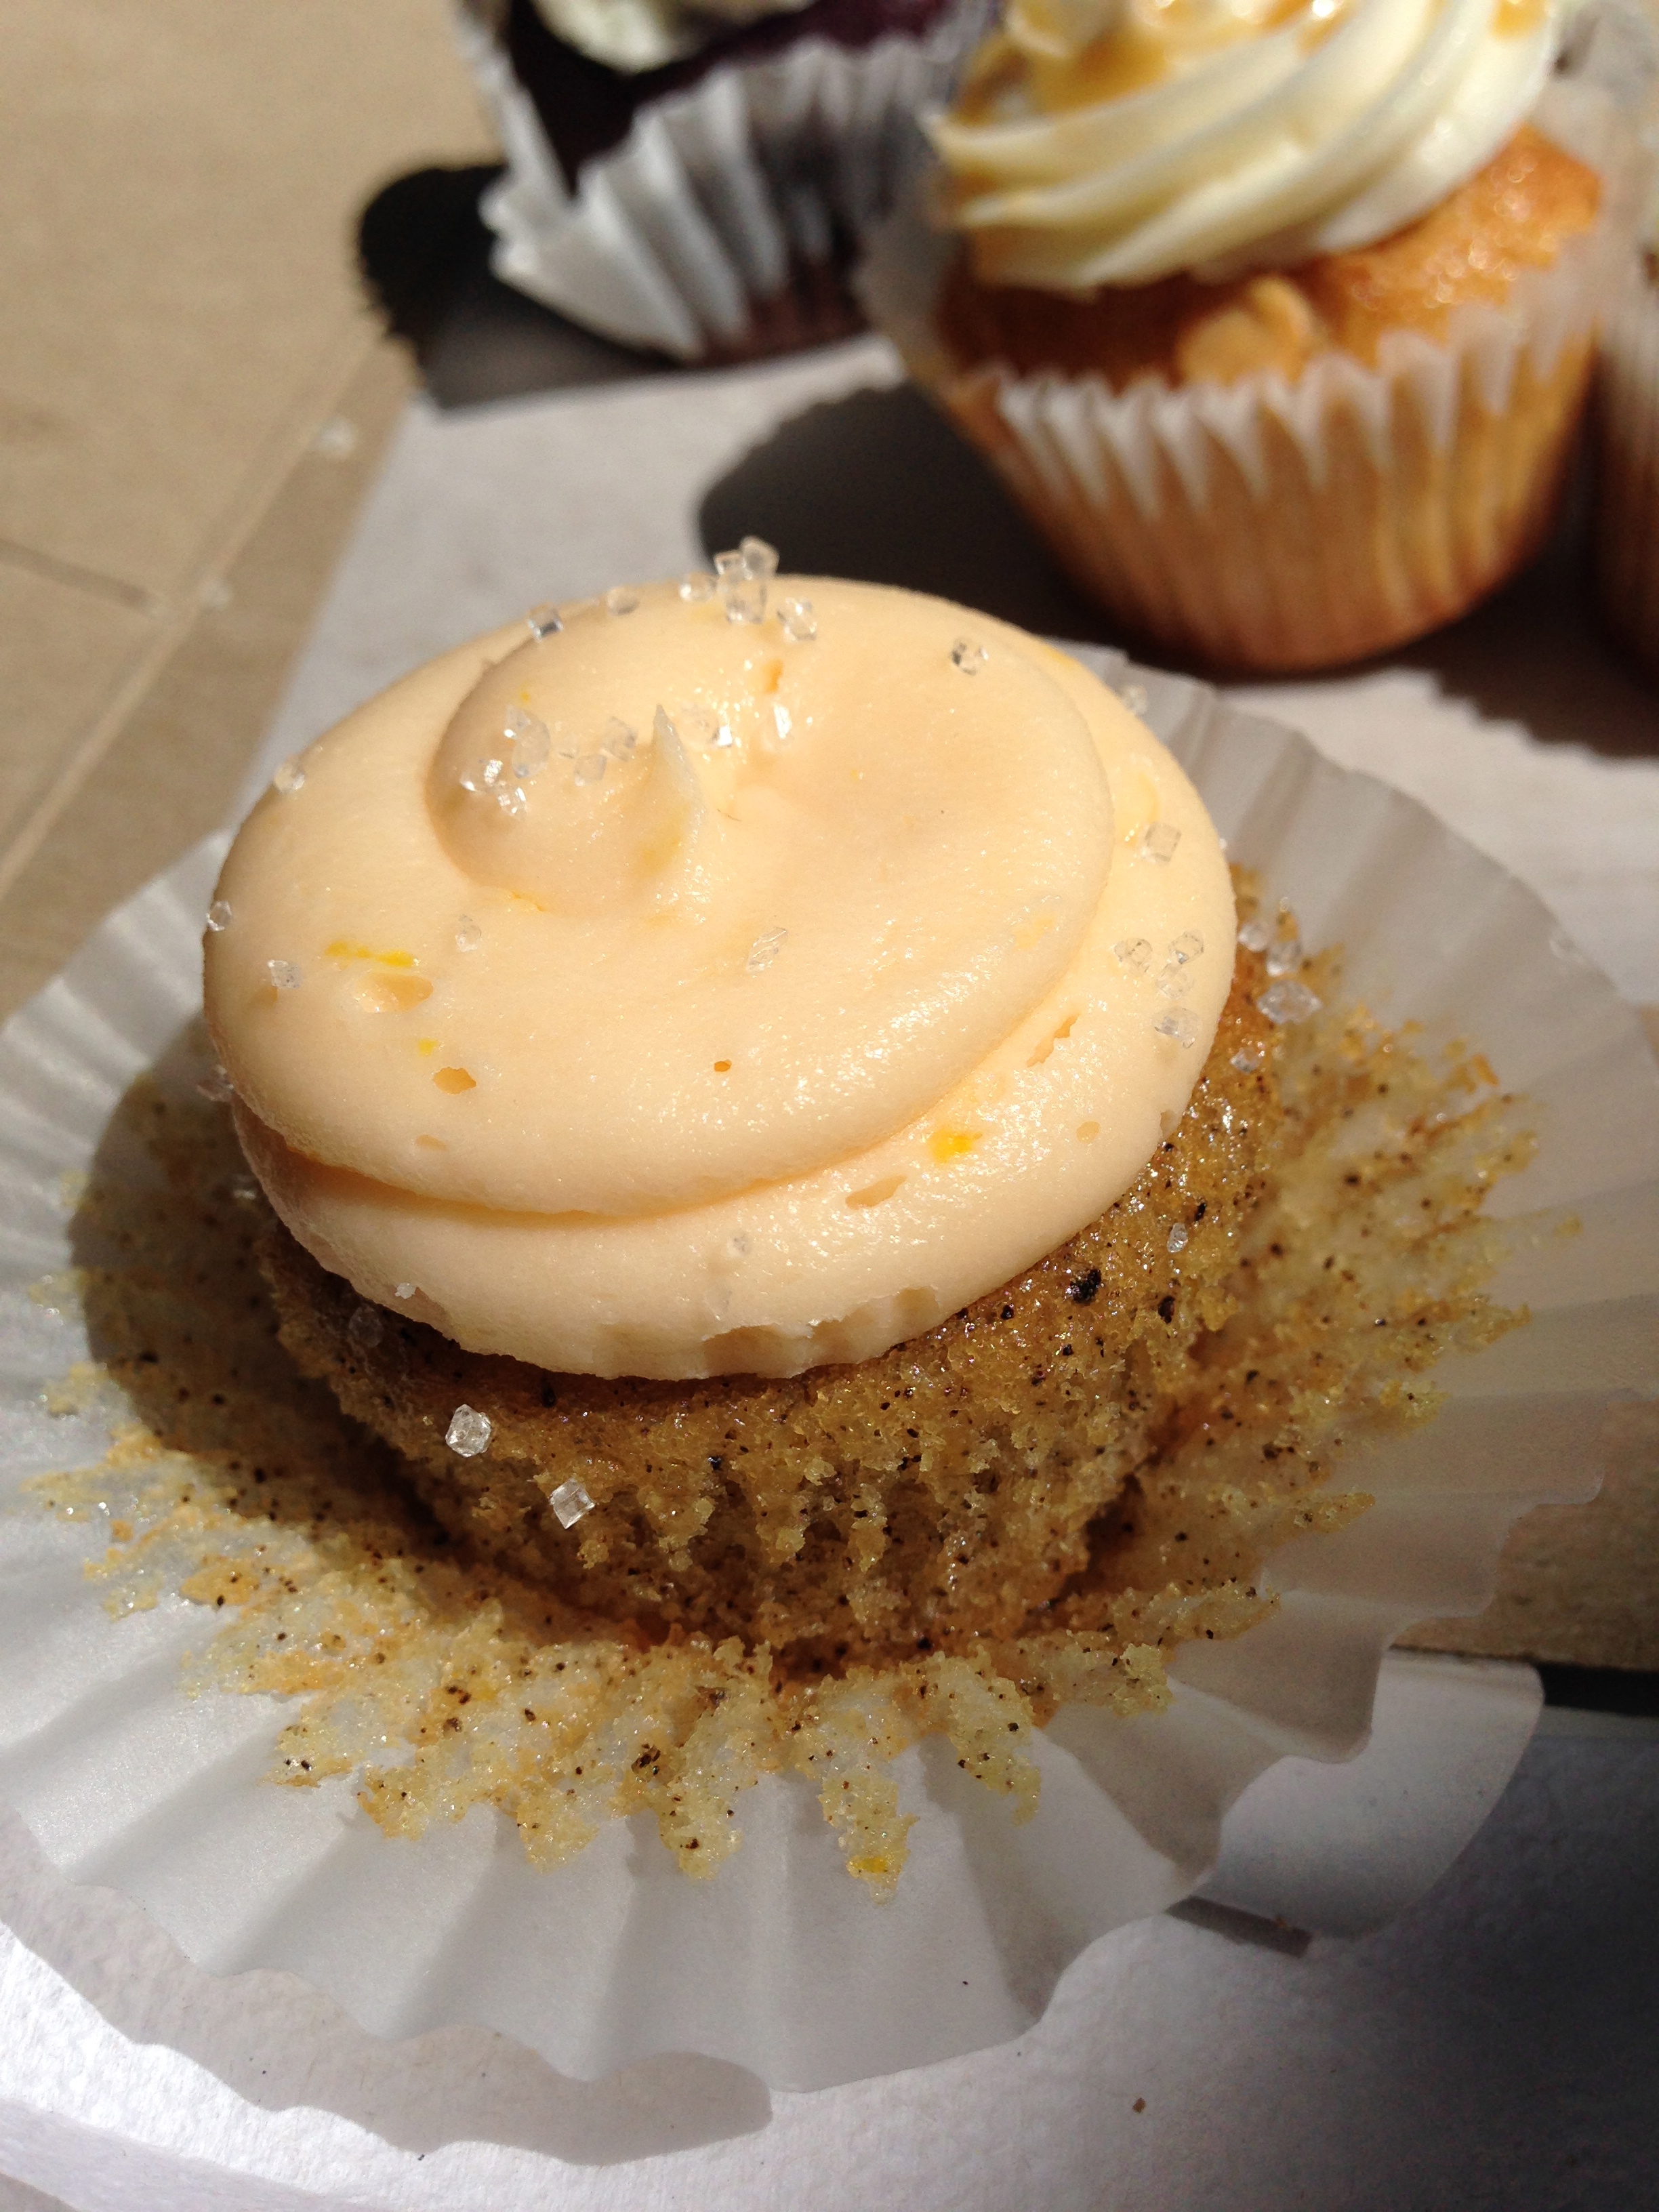 Earl grey with orange buttercream mini-cupcake.